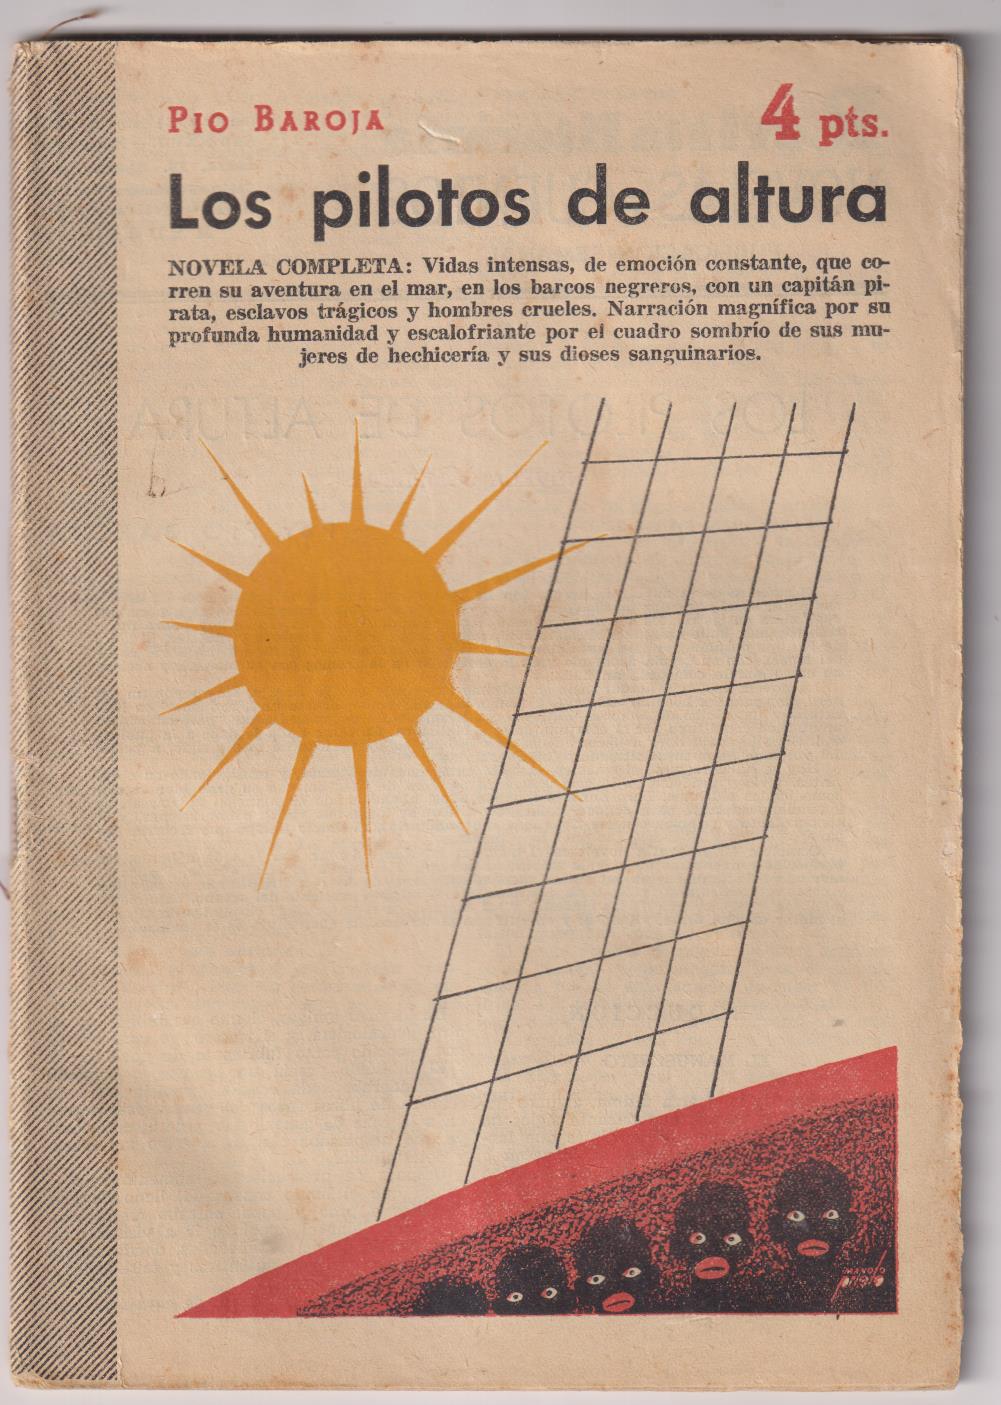 Revista Literaria Novelas y Cuentos nº 1258. Los Pilotos de altura por Pío Baroja. Año 1955